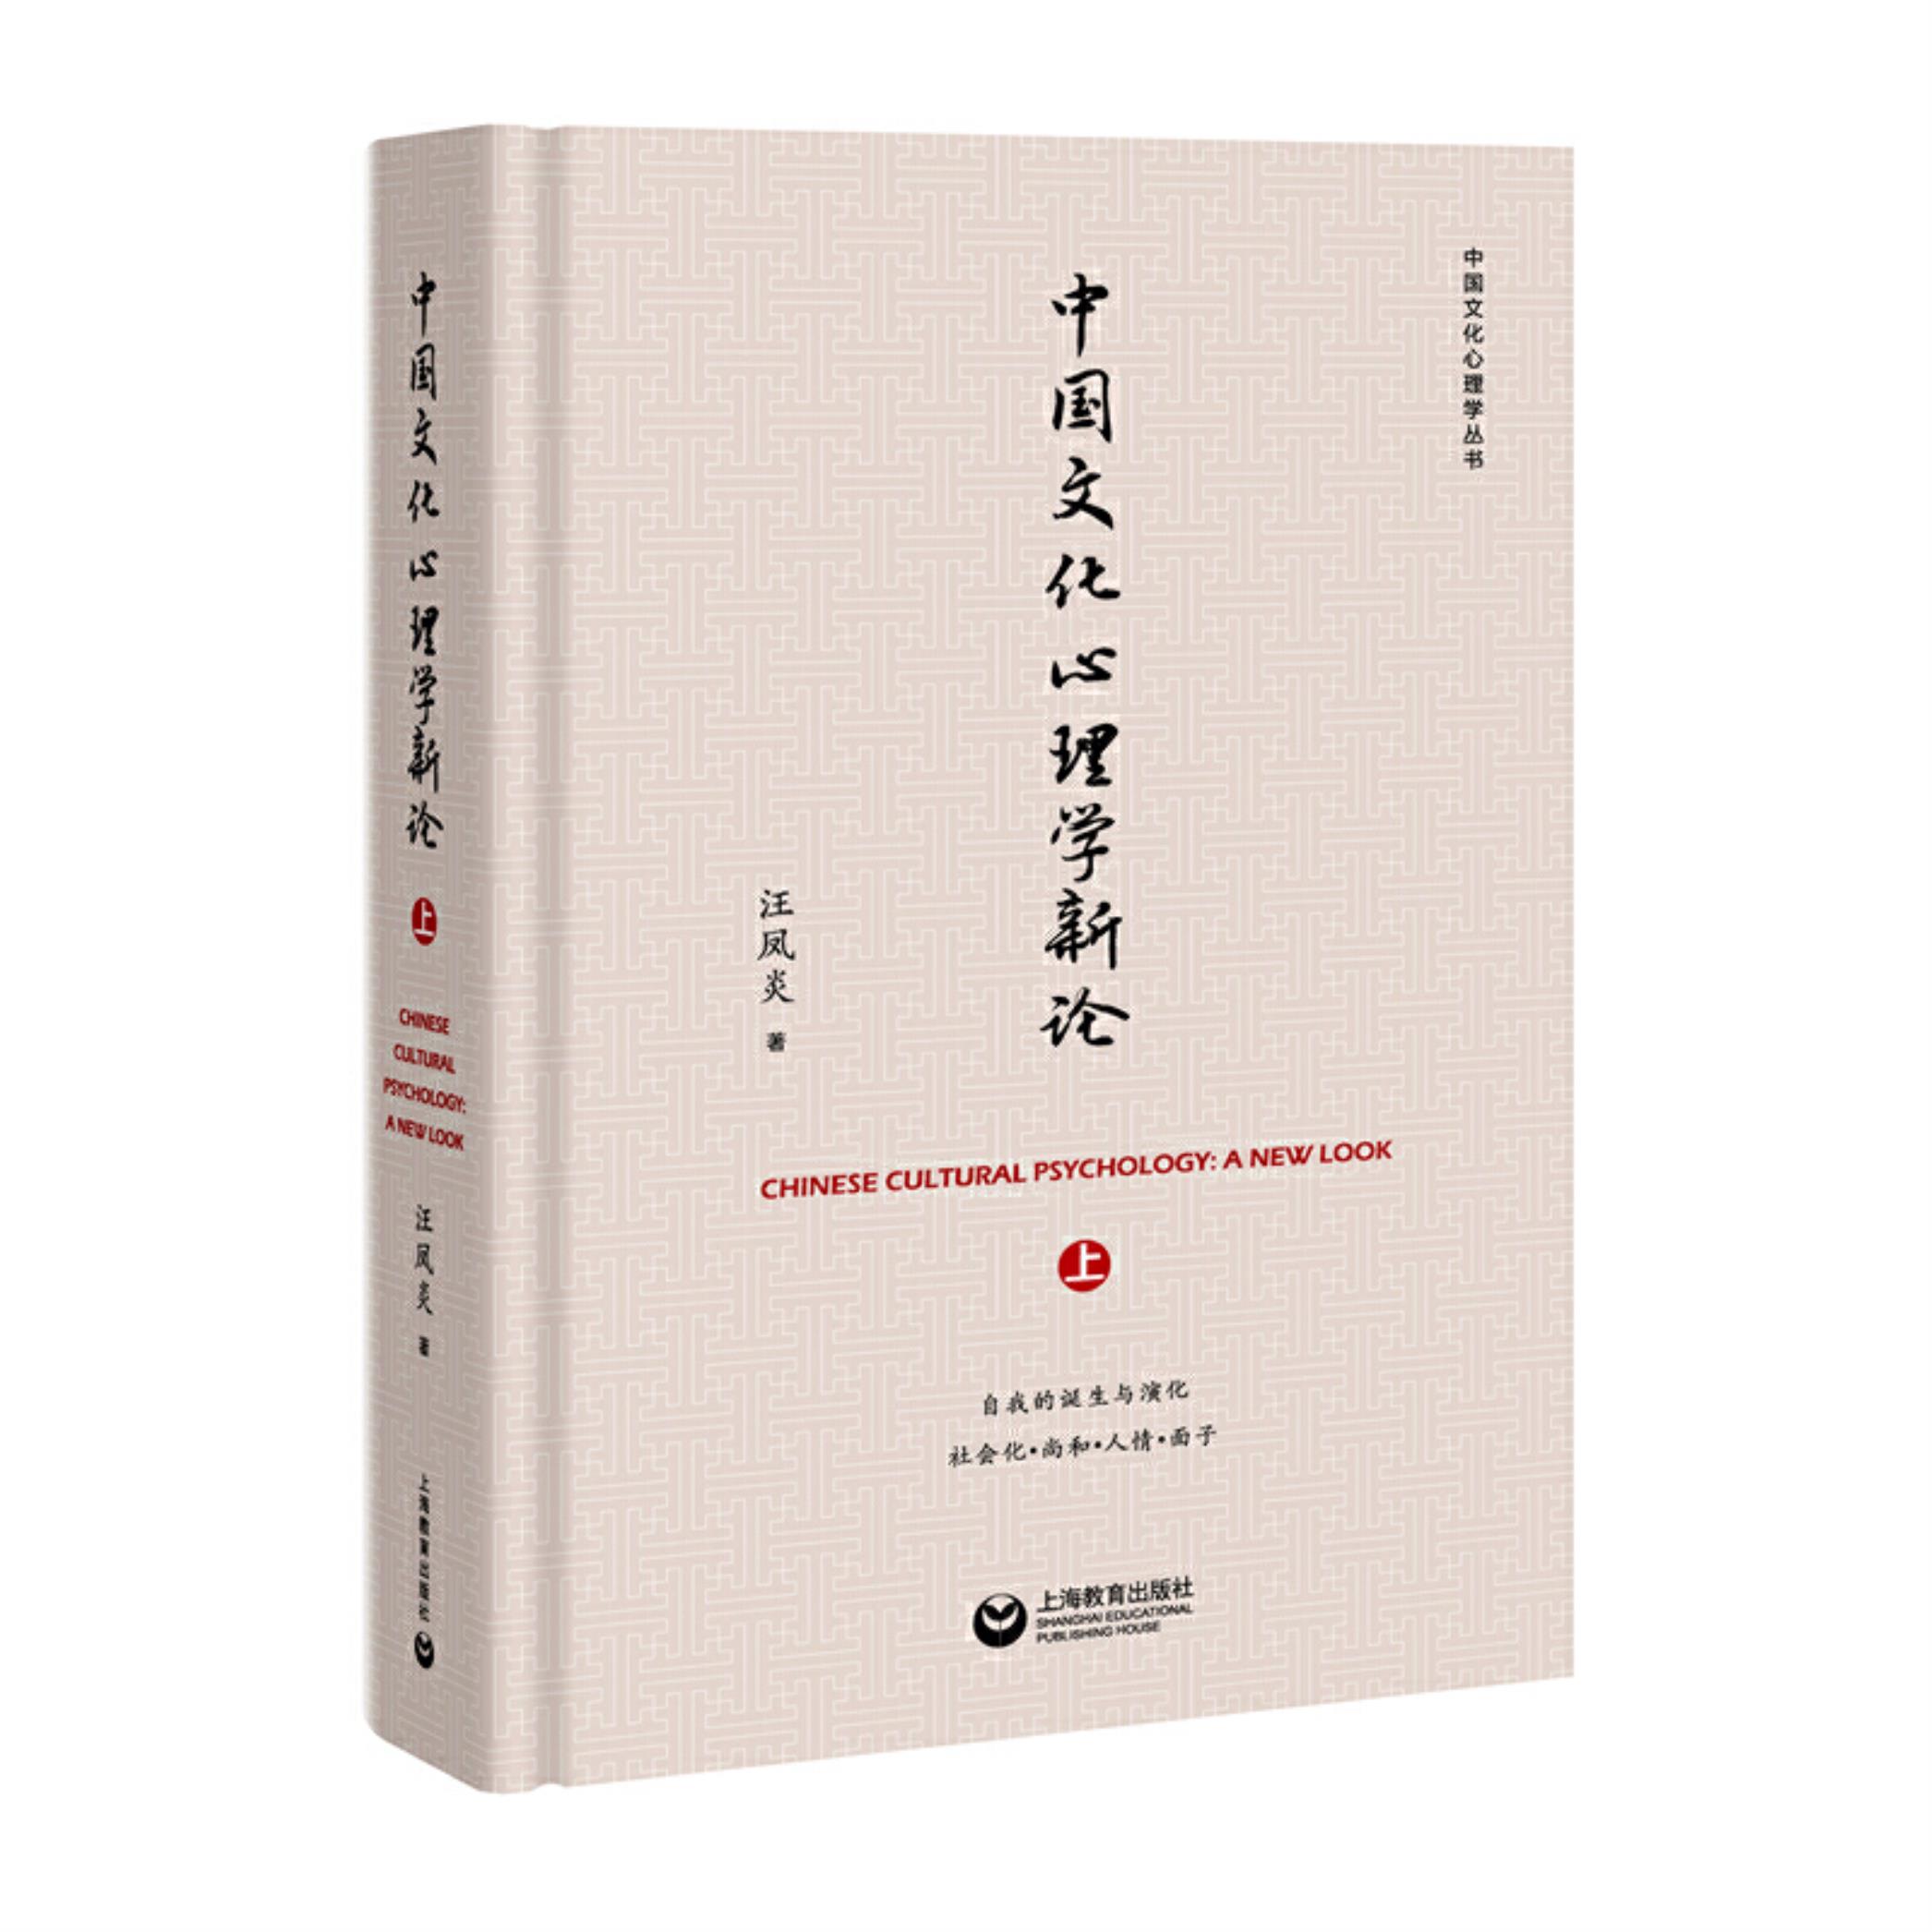 【正版】中国文化心理学新论(上)汪凤炎著上海教育出版社